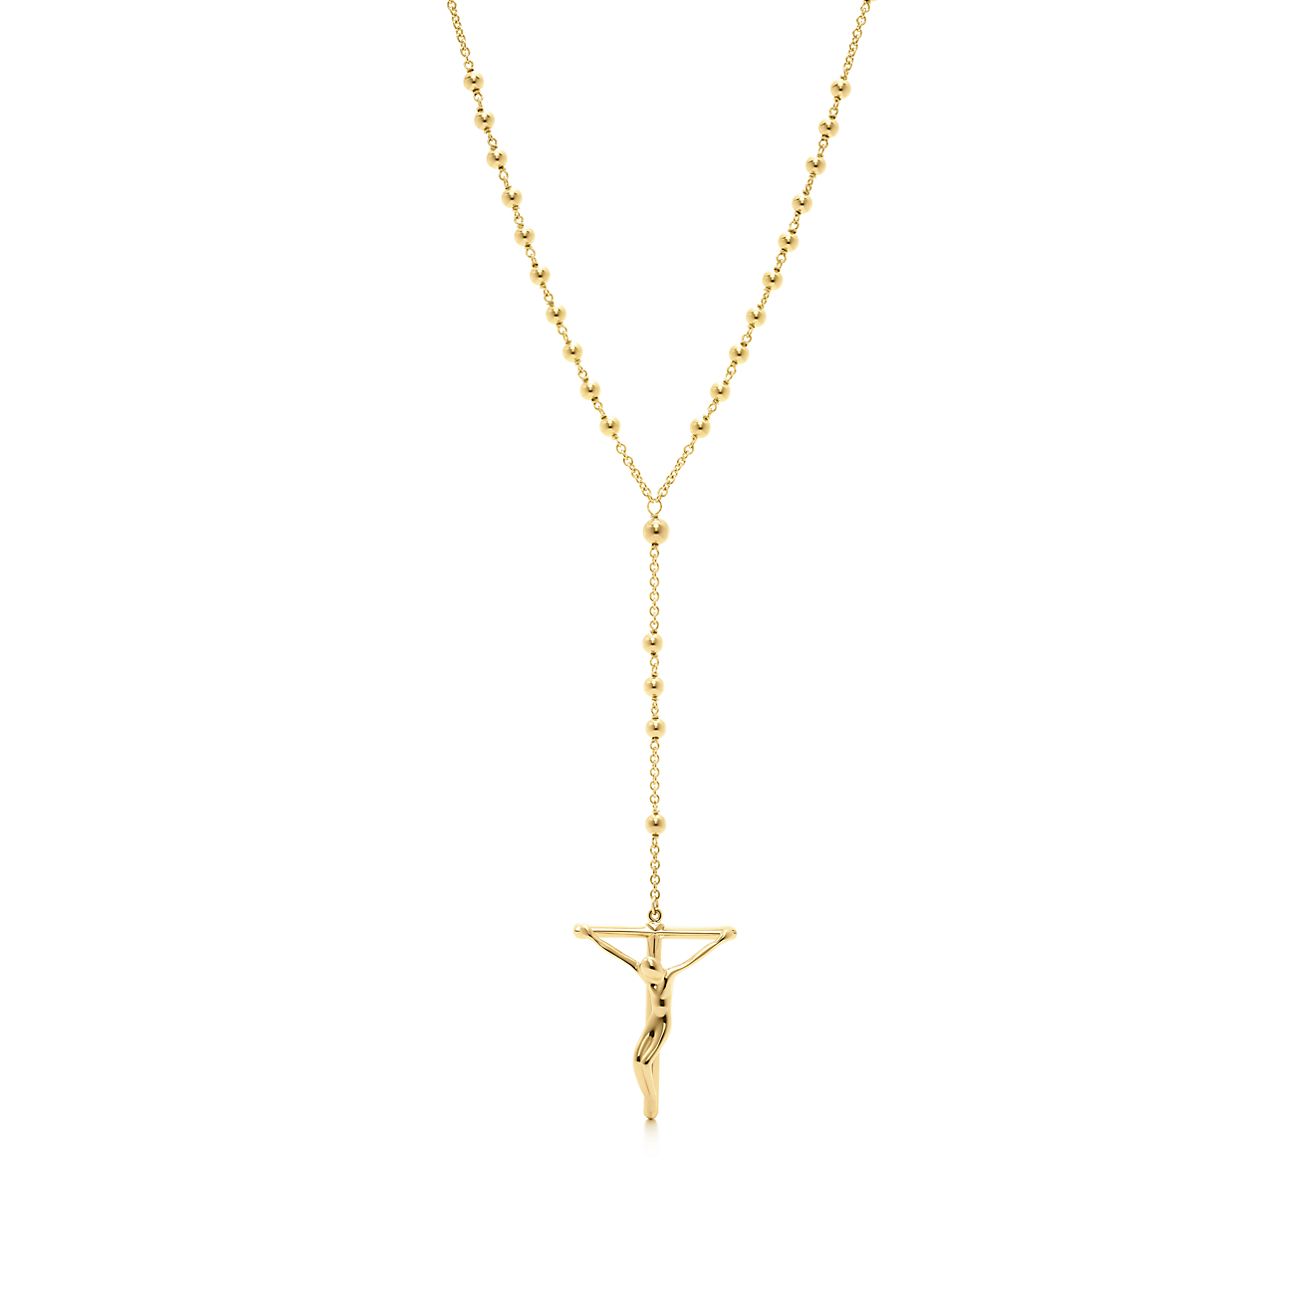 tiffany rosary necklace